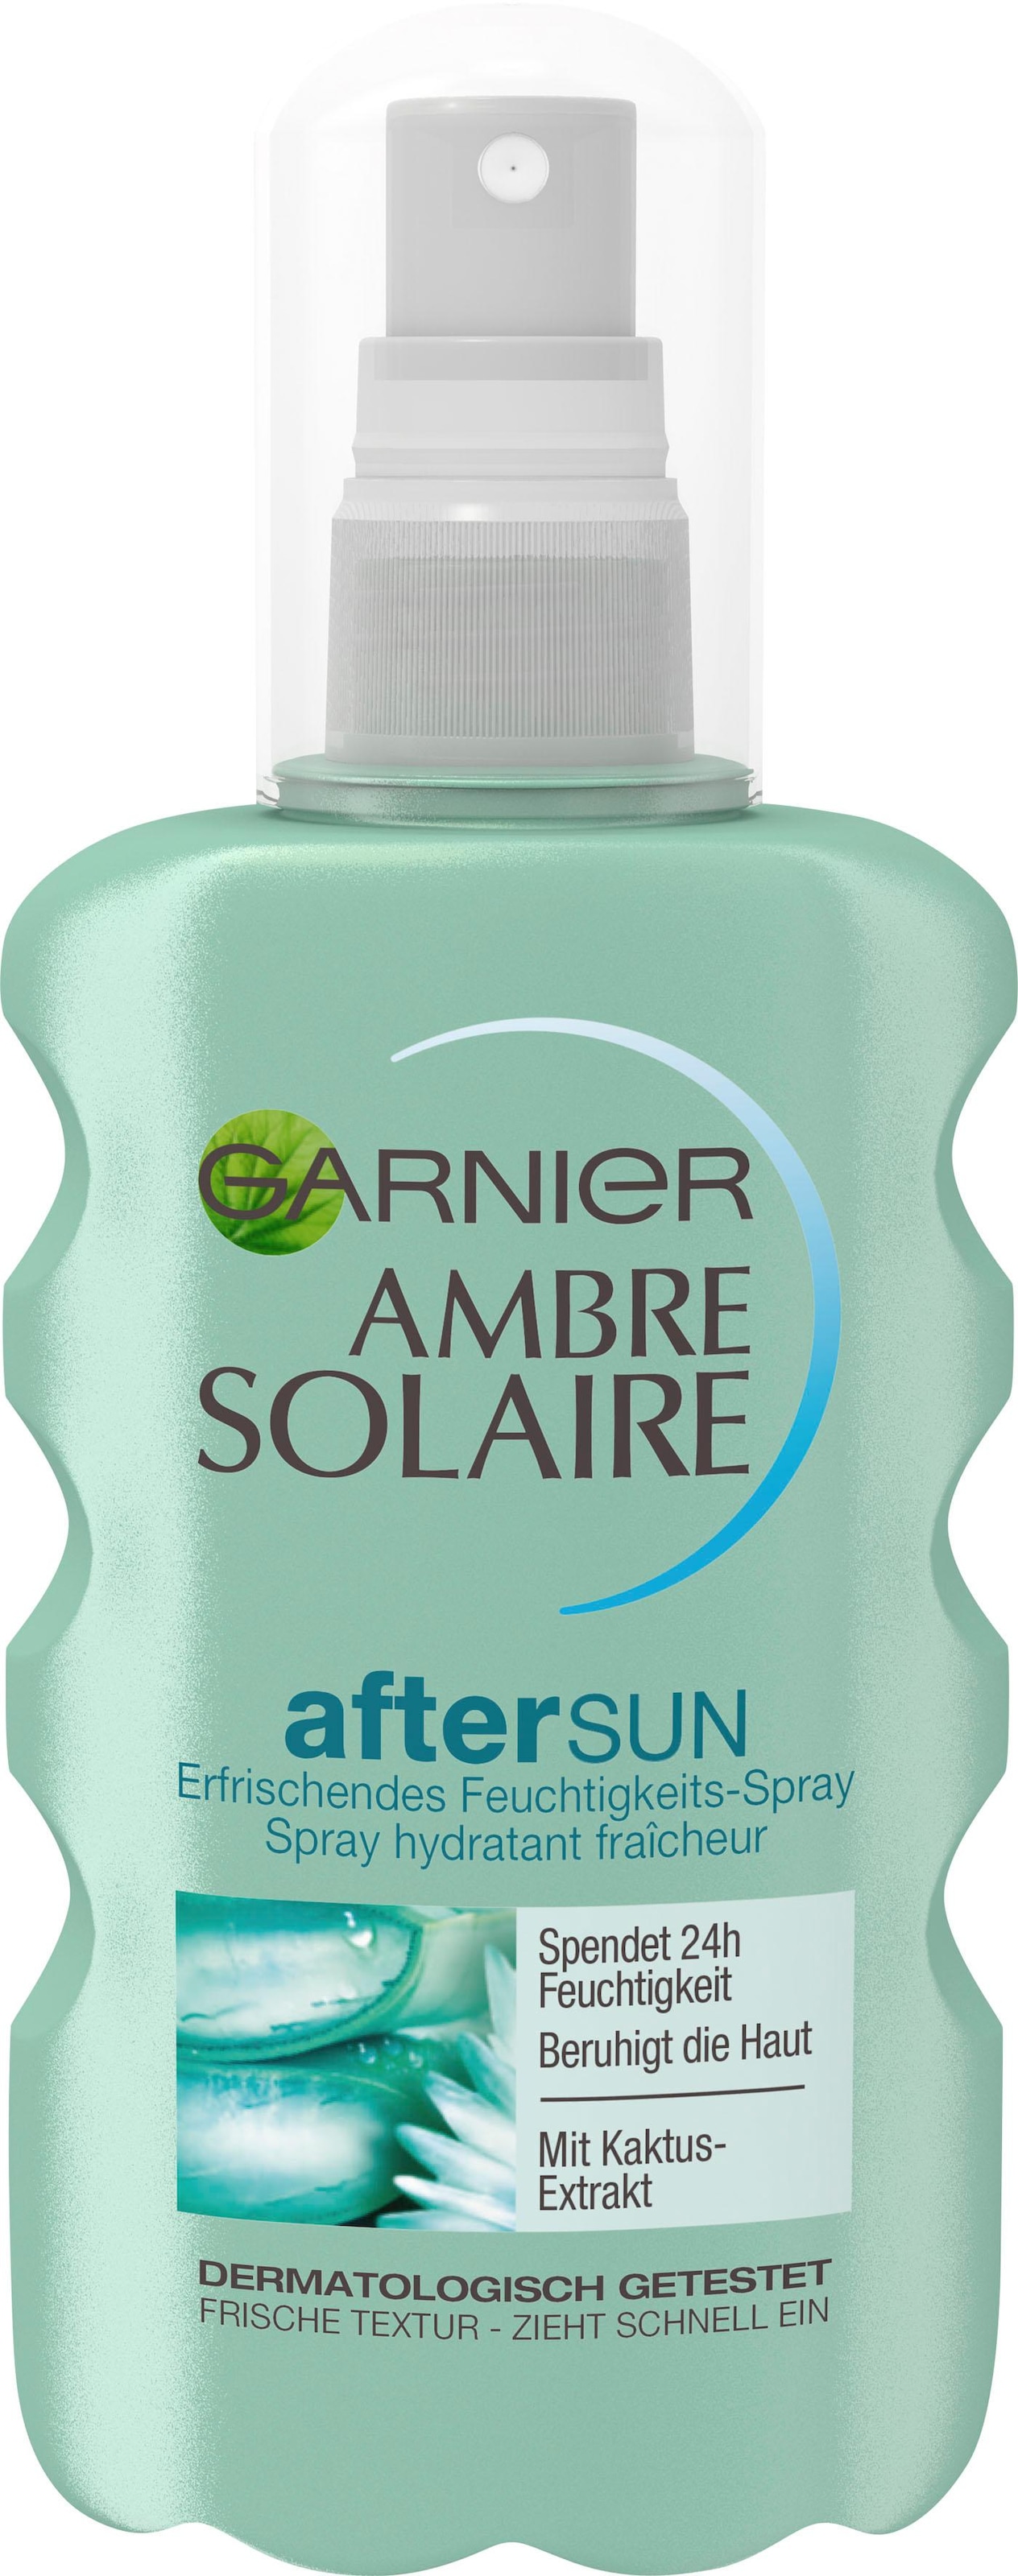 mit Solaire Sun-Spray After Feuchtigkeits-Après«, GARNIER Kaktus-Extrakt bei »Ambre